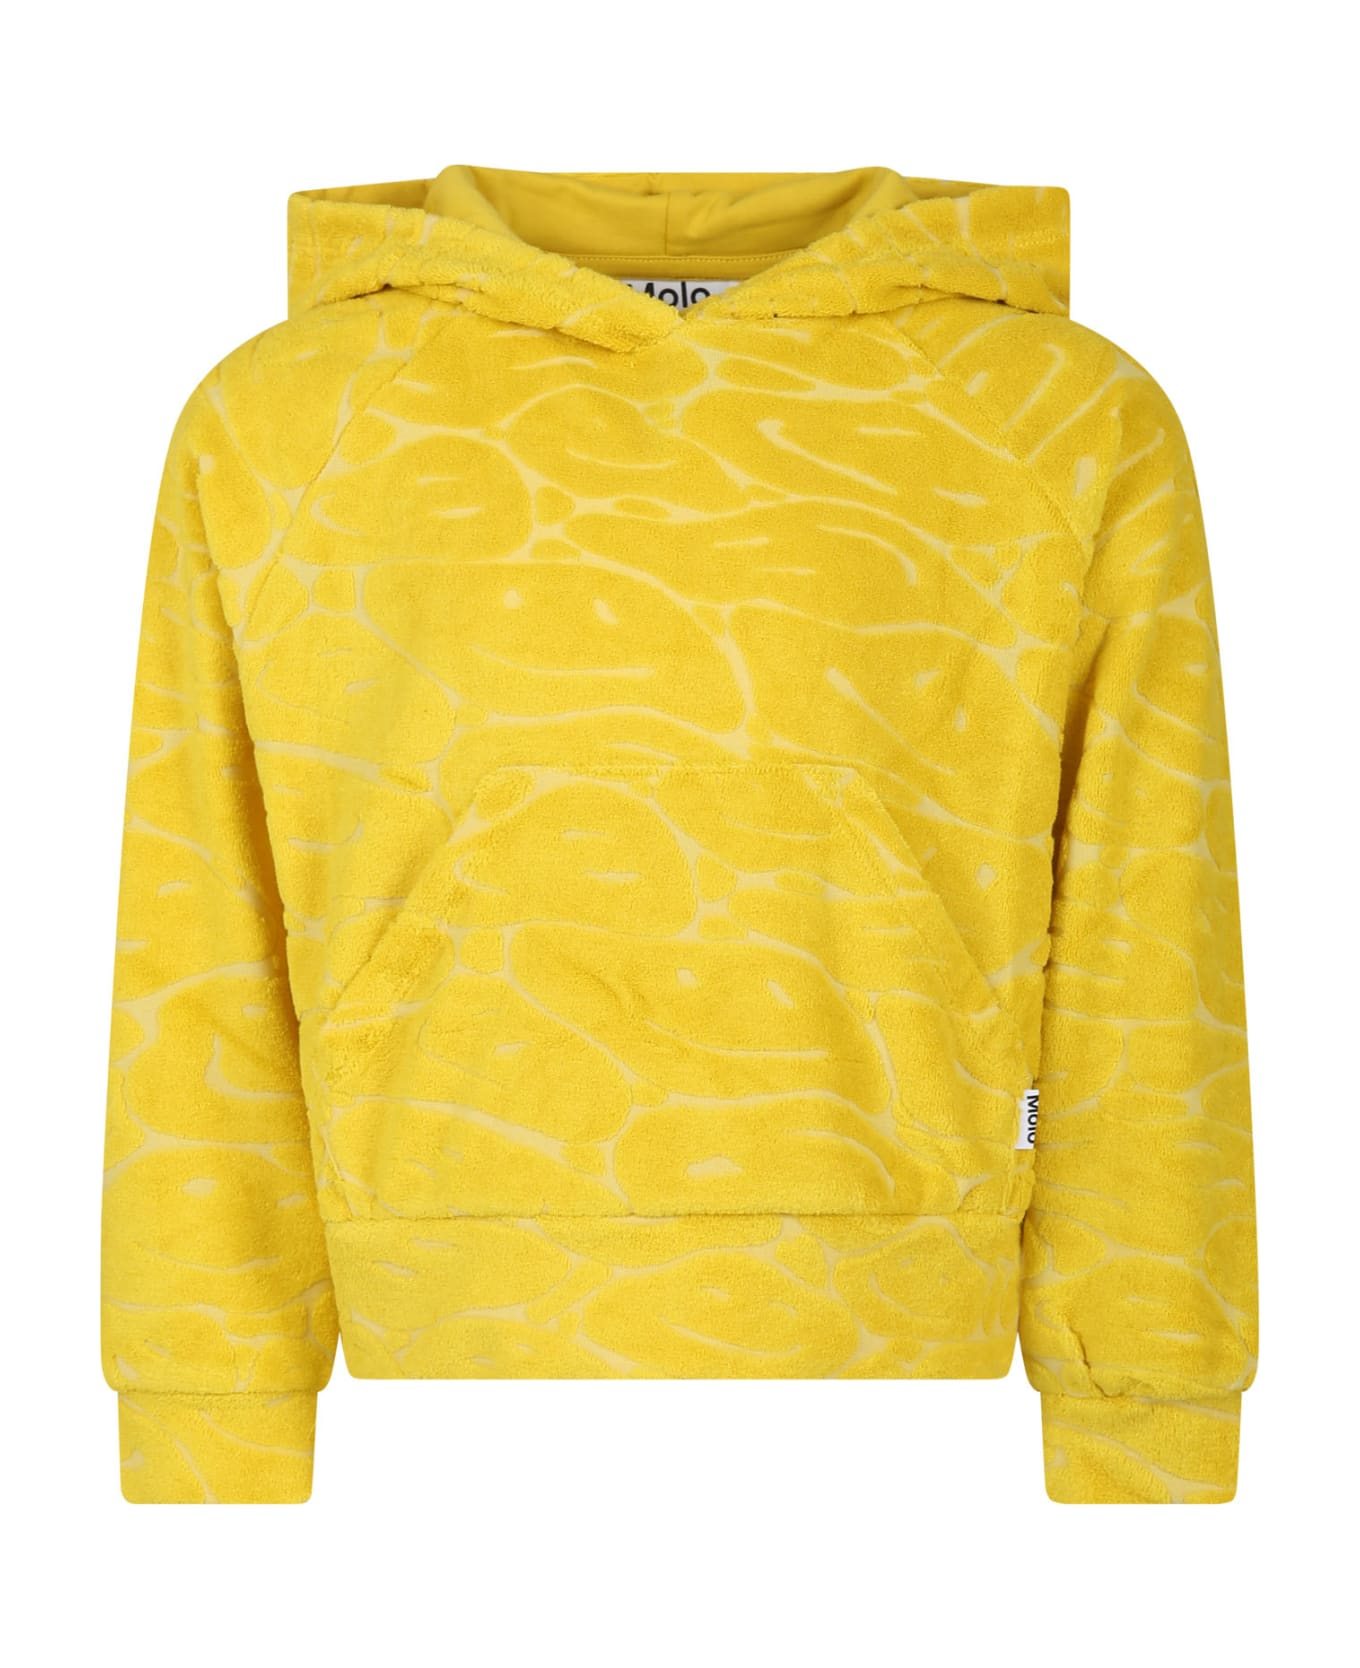 Molo Yellow Sweatshirt For Girl With Smiley - Yellow ニットウェア＆スウェットシャツ